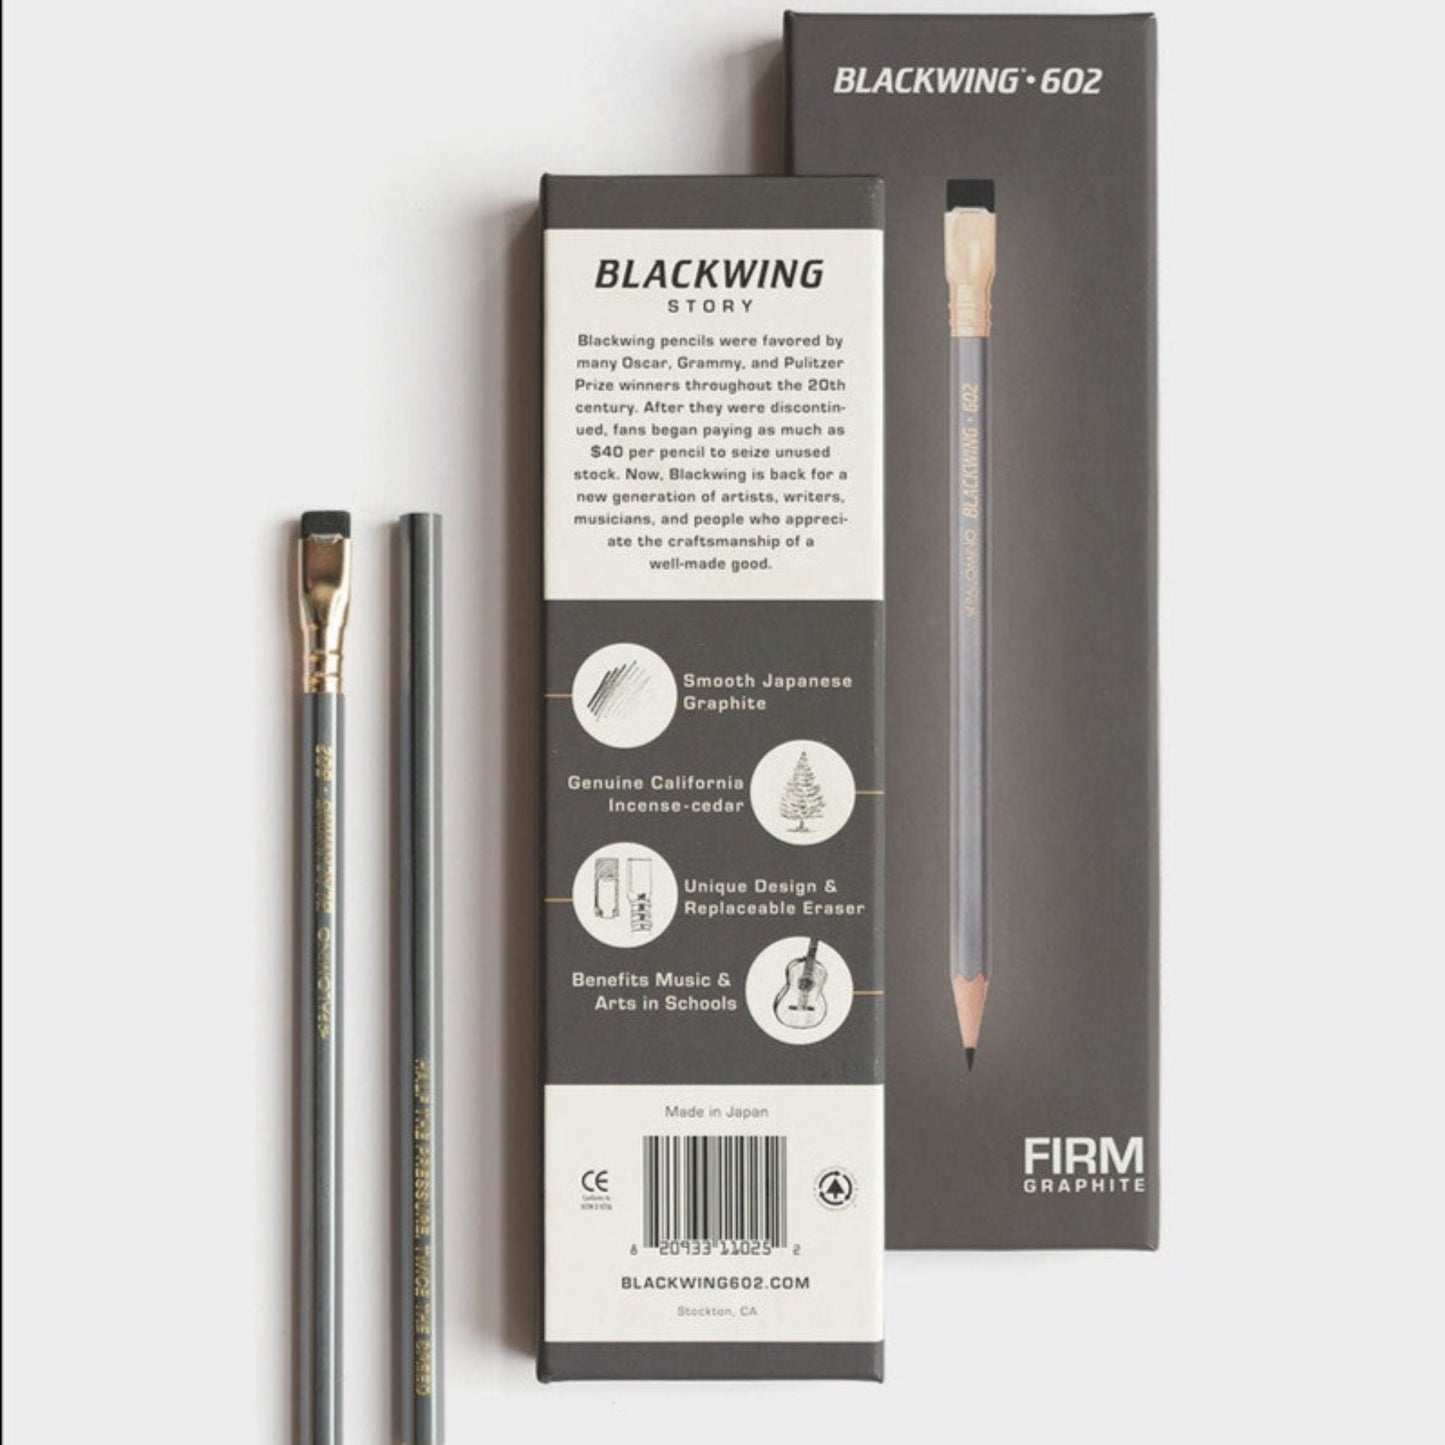 Blackwing - 602 Graphite Pencils - Grierson Studio